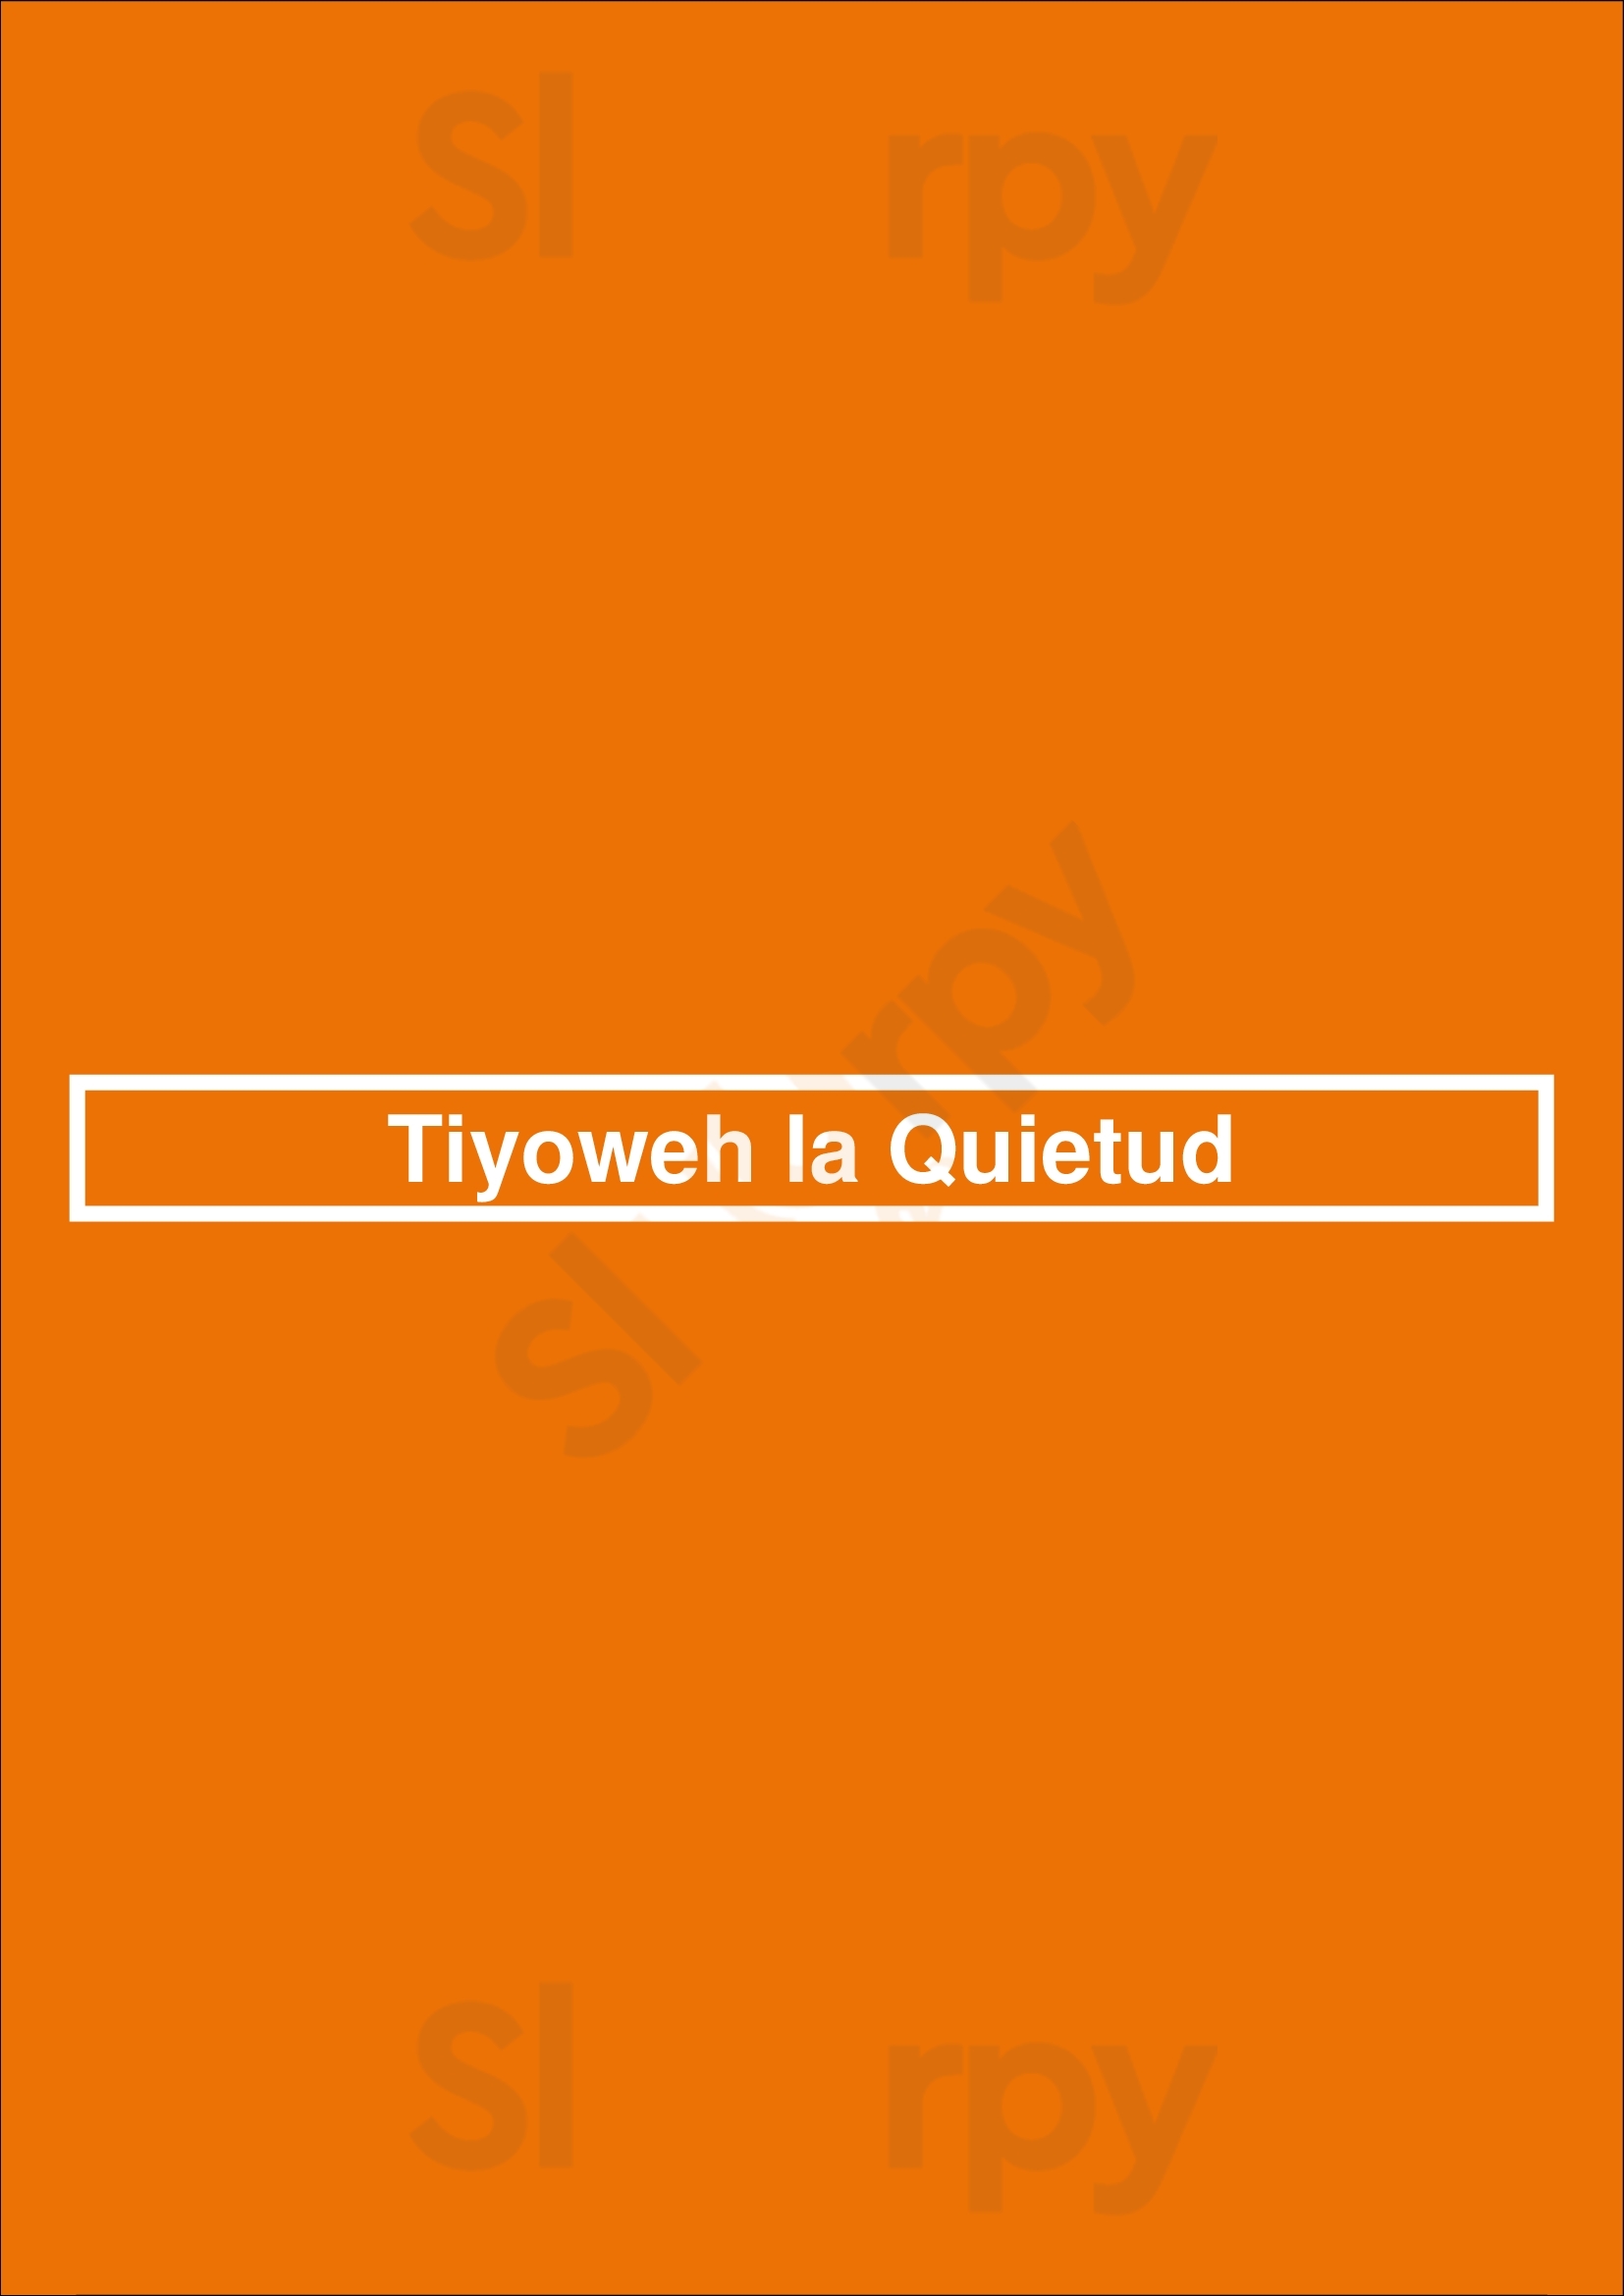 Tiyoweh La Quietud Madrid Menu - 1